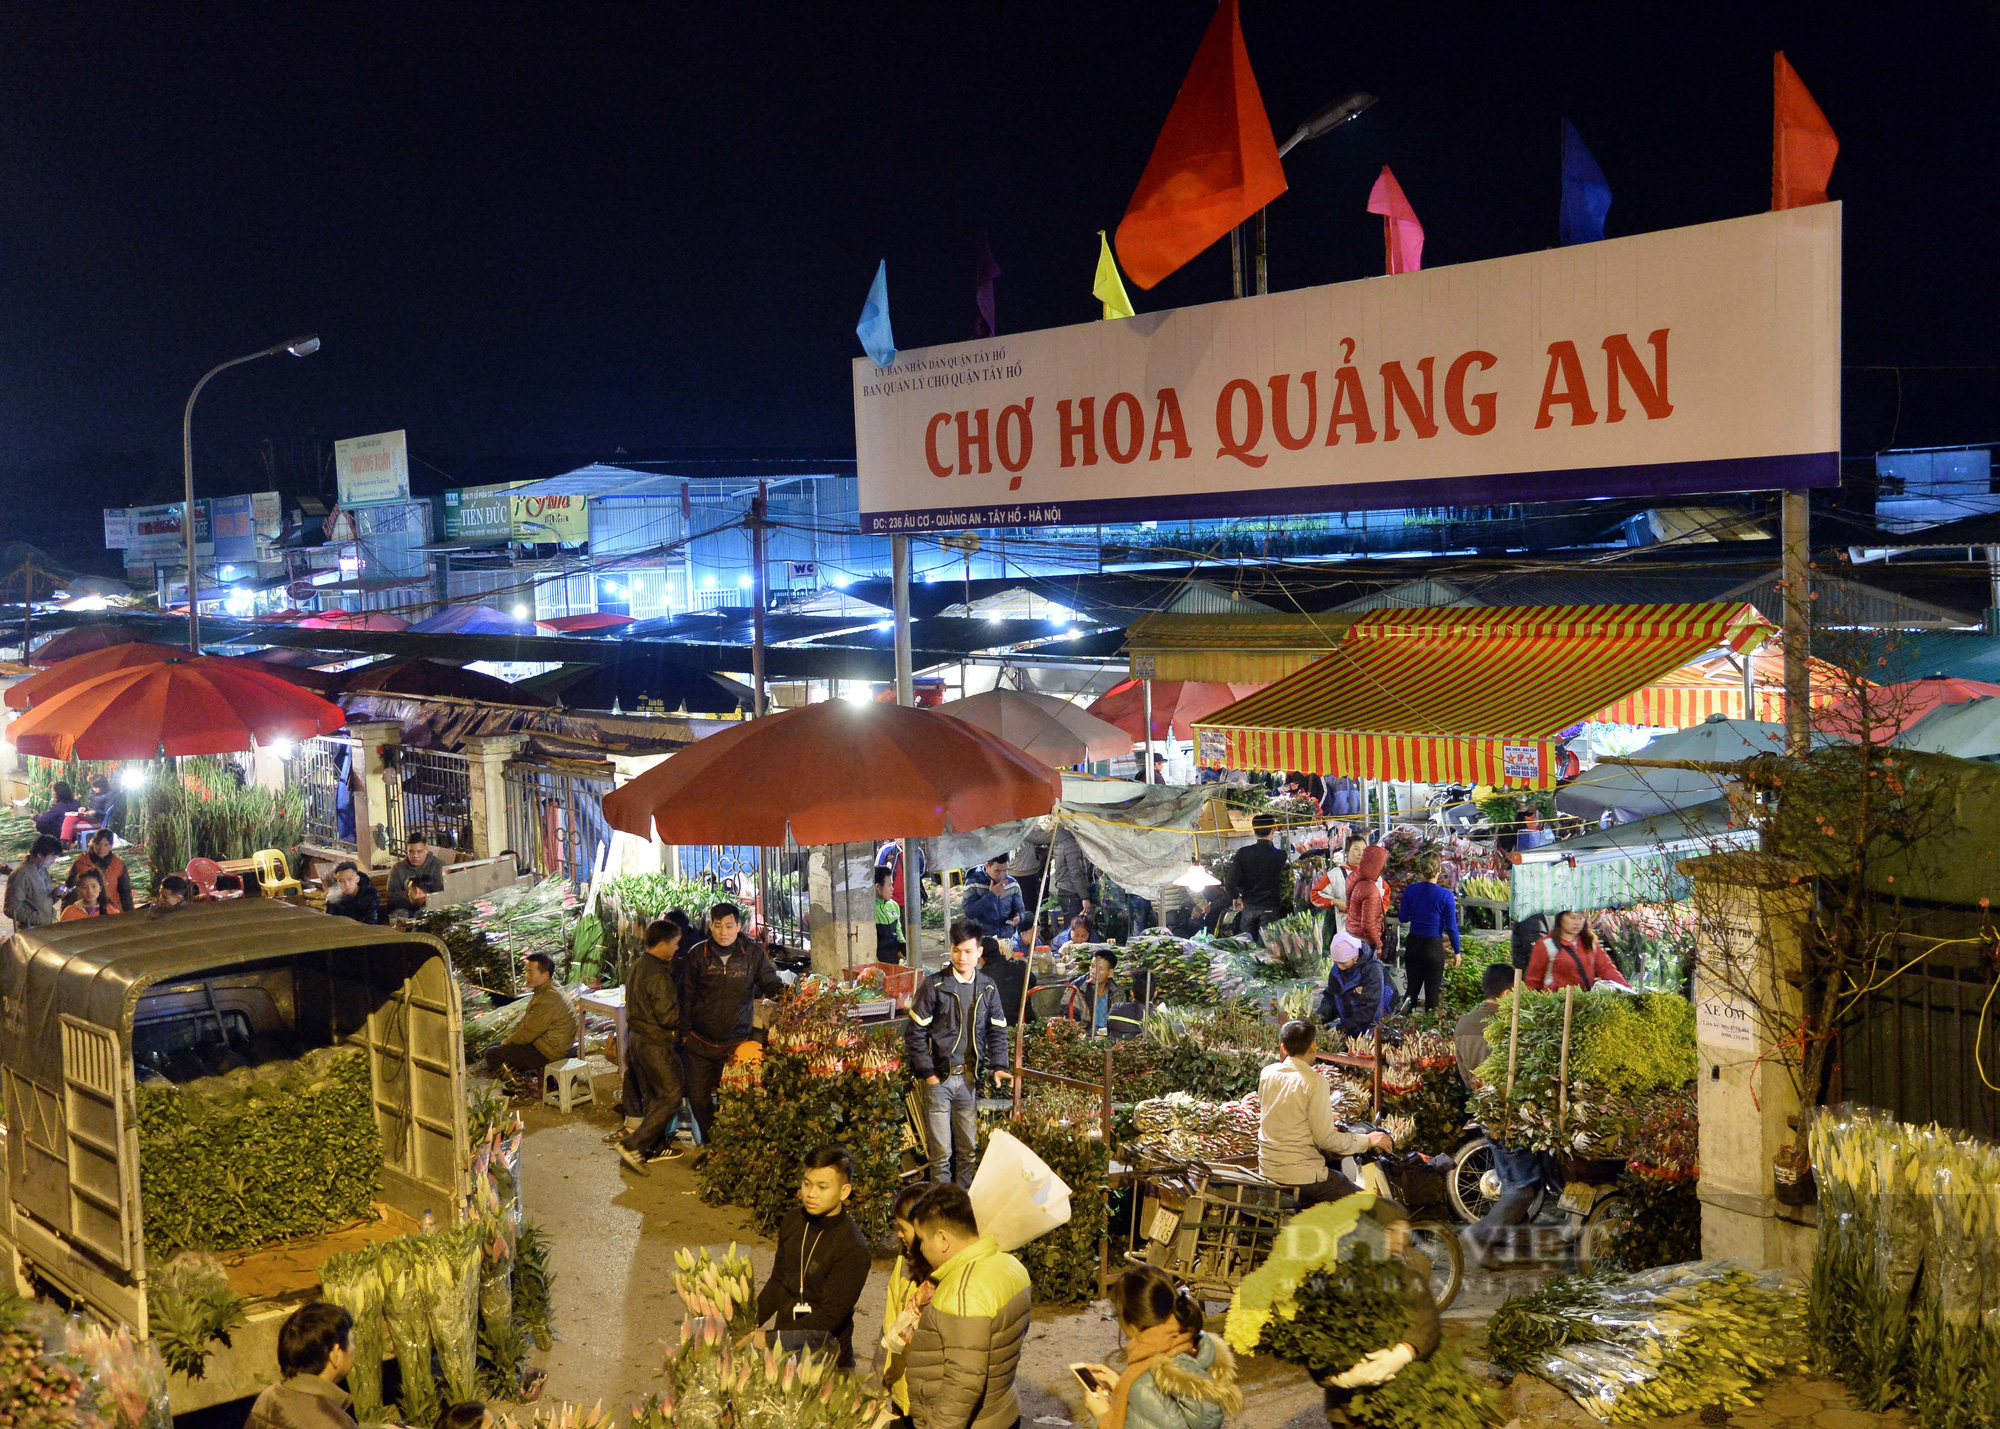 Chợ hoa đêm Quảng An nhộn nhịp những ngày giáp Tết Nhâm Dần 2022 - Ảnh 1.